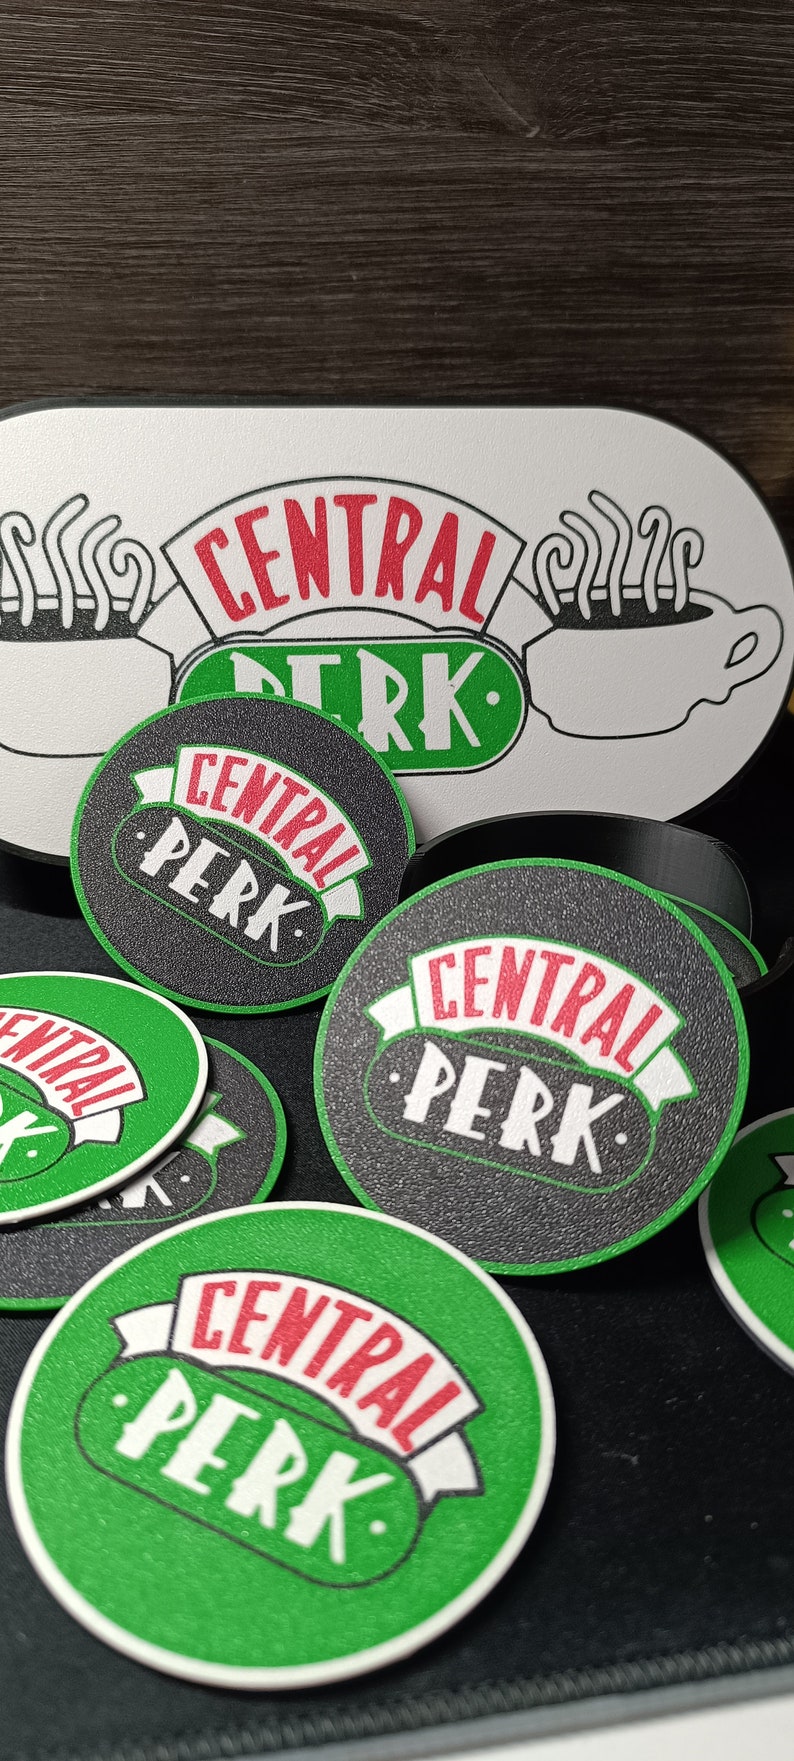 Posa vasos Central Perk imagen 4